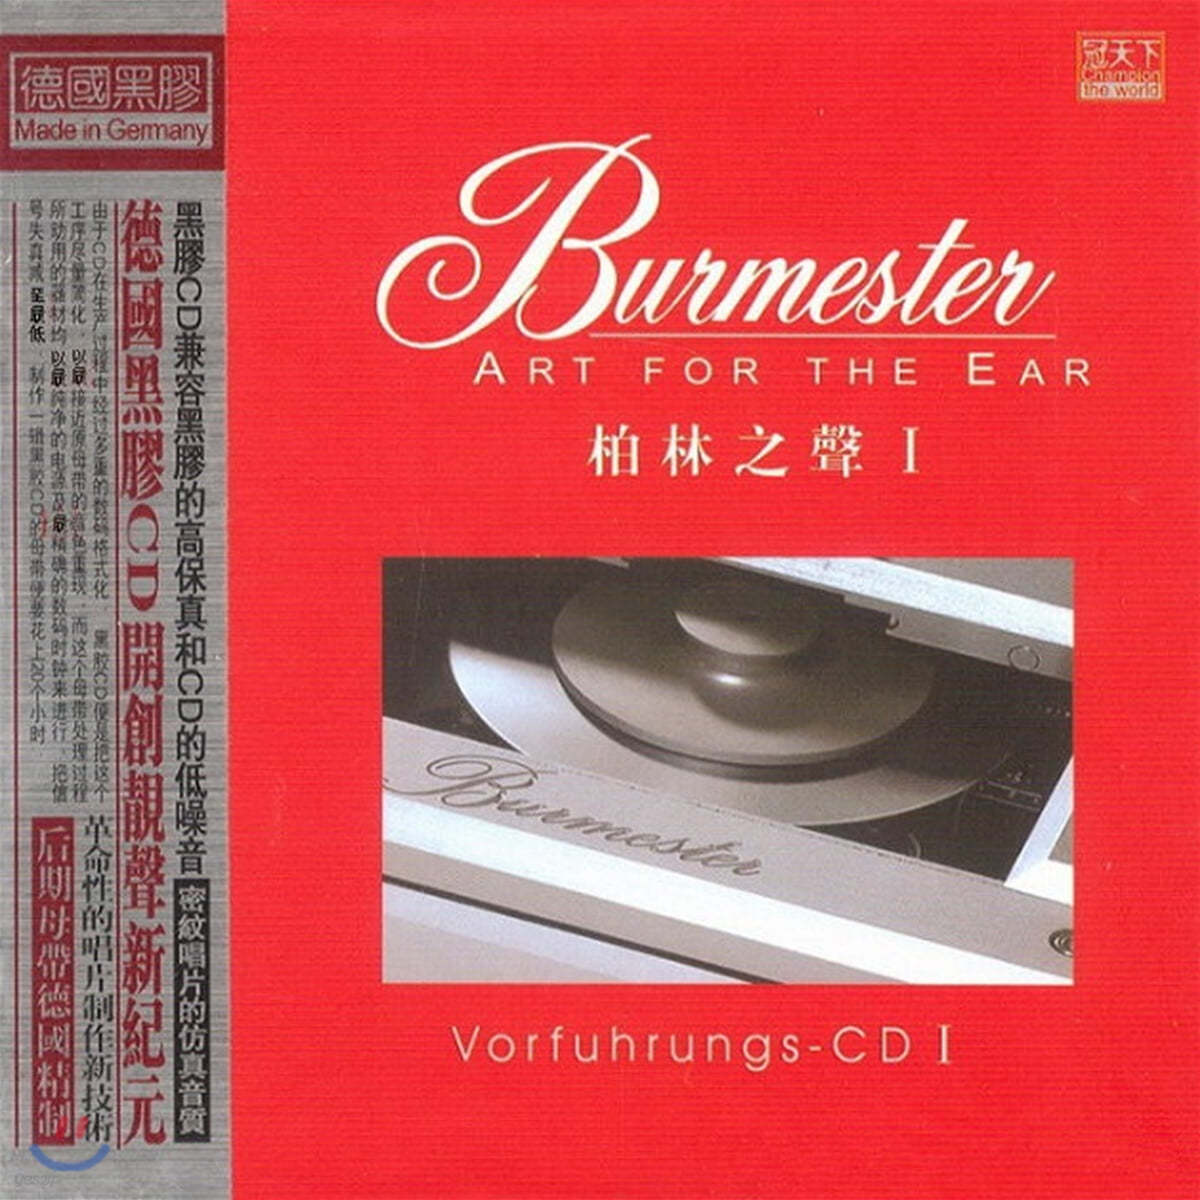 버메스터와 콜라보레이션한 오디오파일 테스트 음반 1집 (Burmester: Art For The Ear Vol.1)